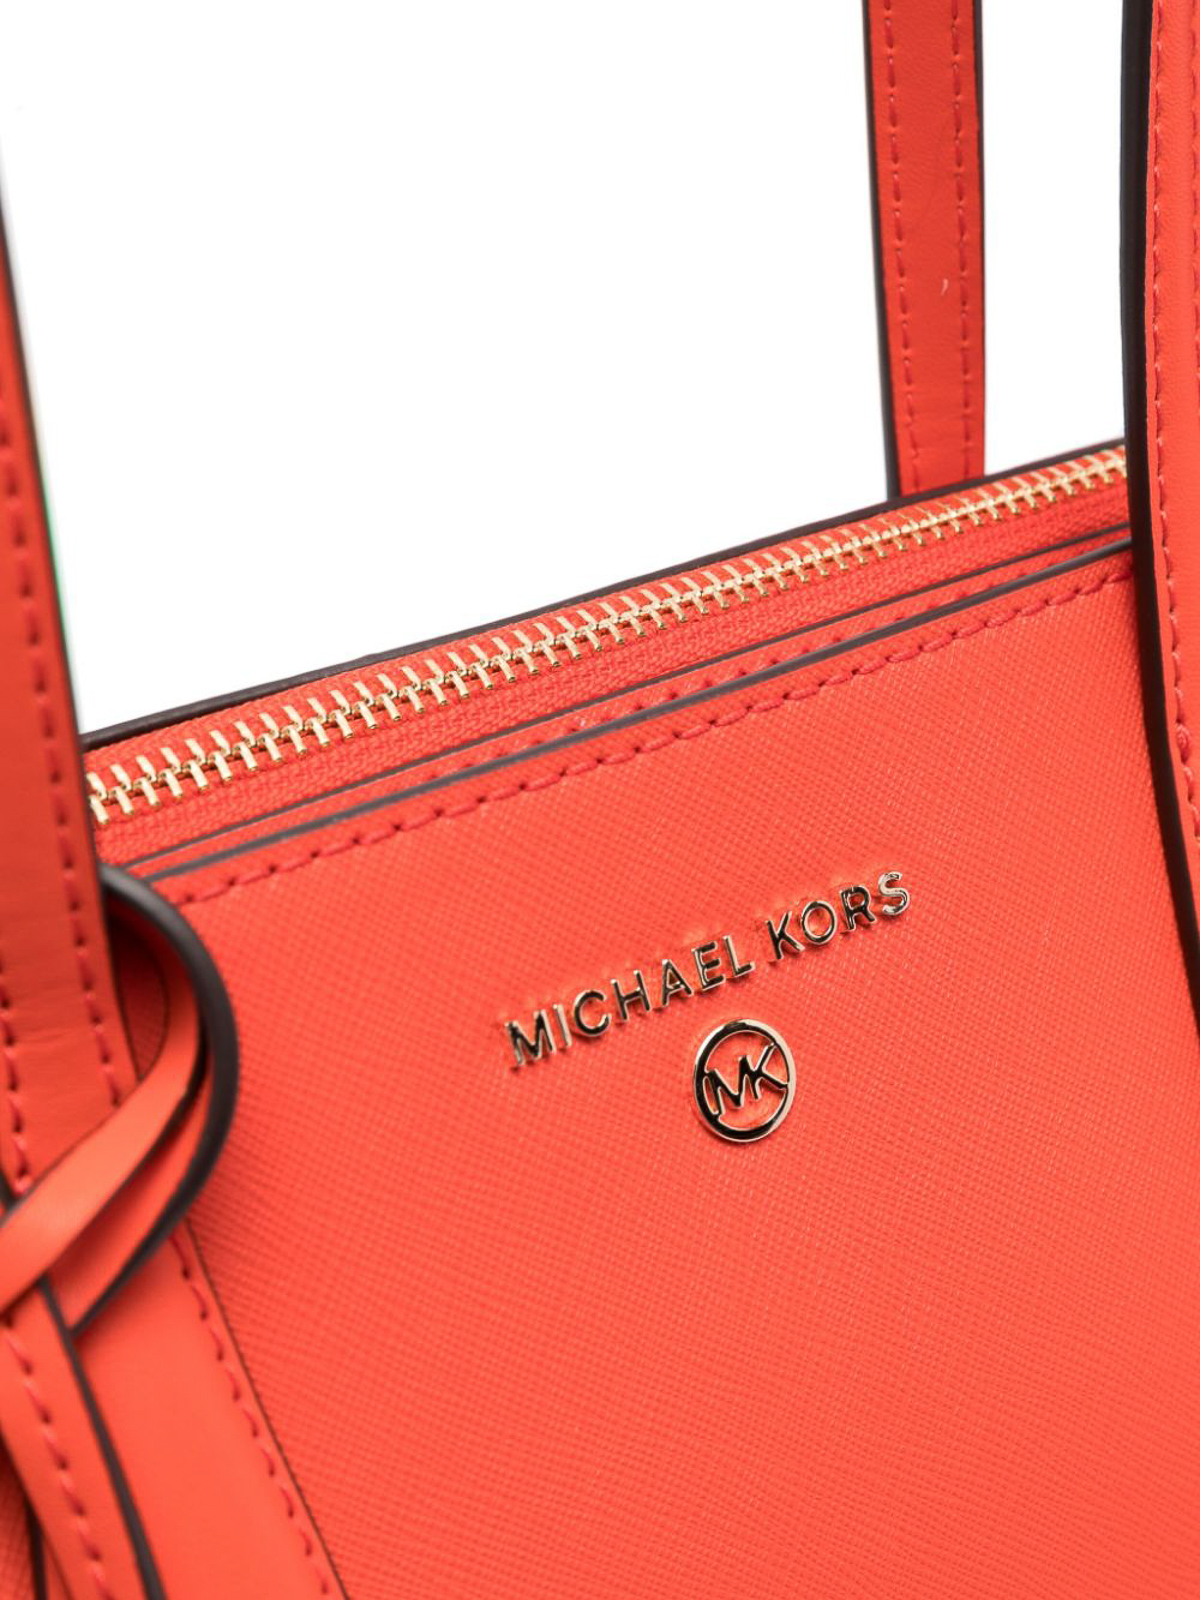 Totes bags Michael Michael Kors - Marilyn medium tote bag - 30S2G6AT2L866